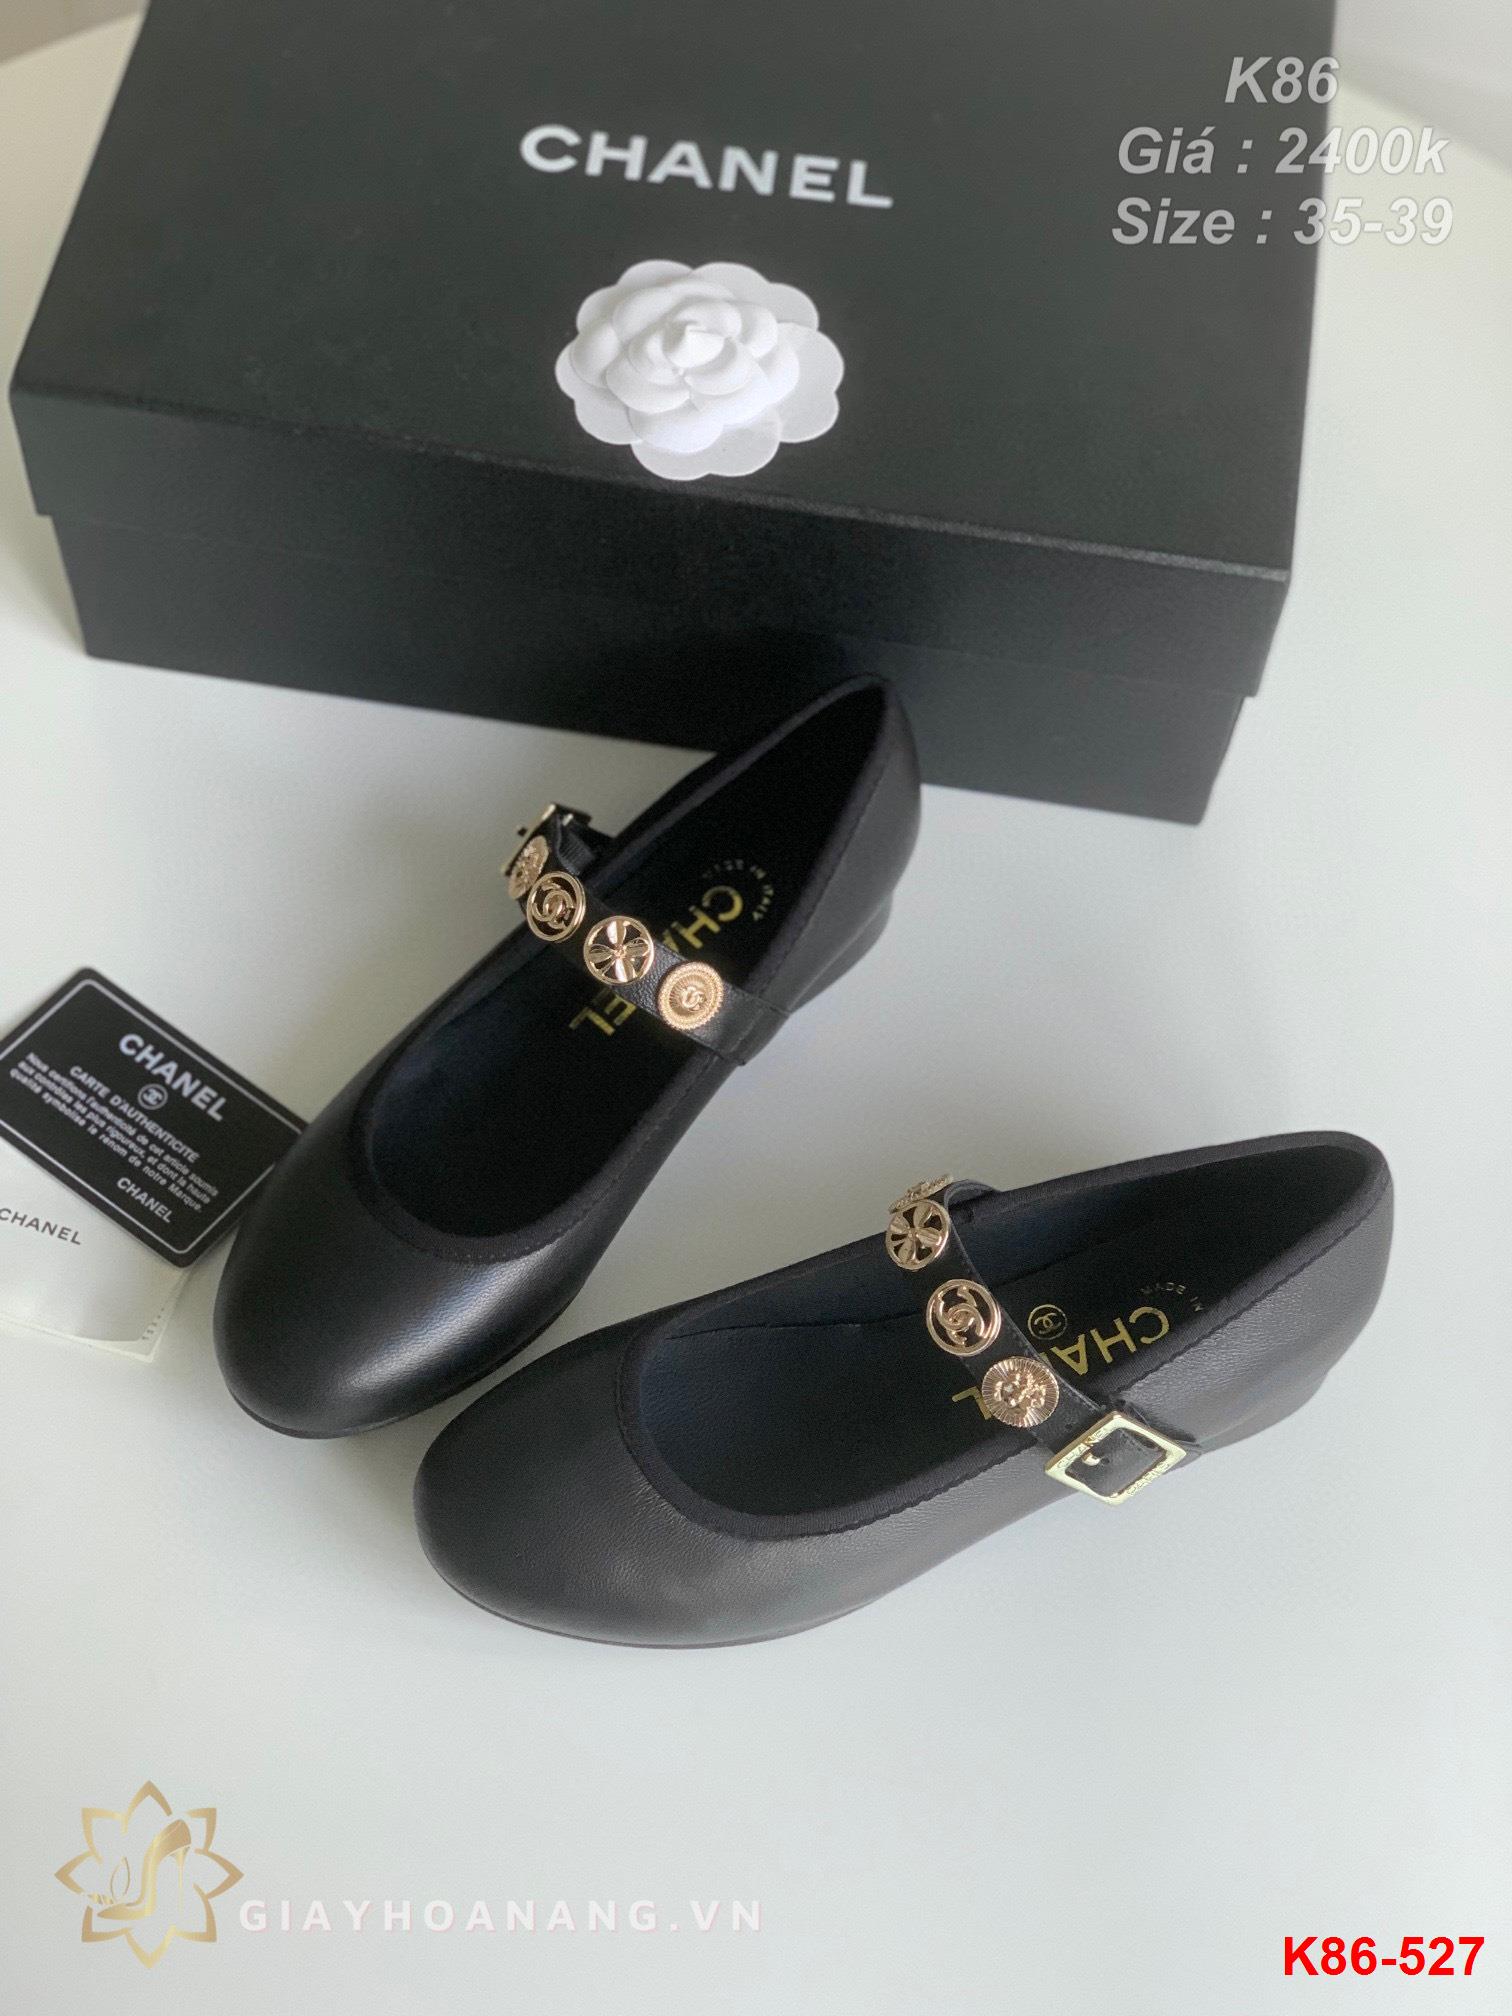 K86-527 Chanel giày bệt siêu cấp